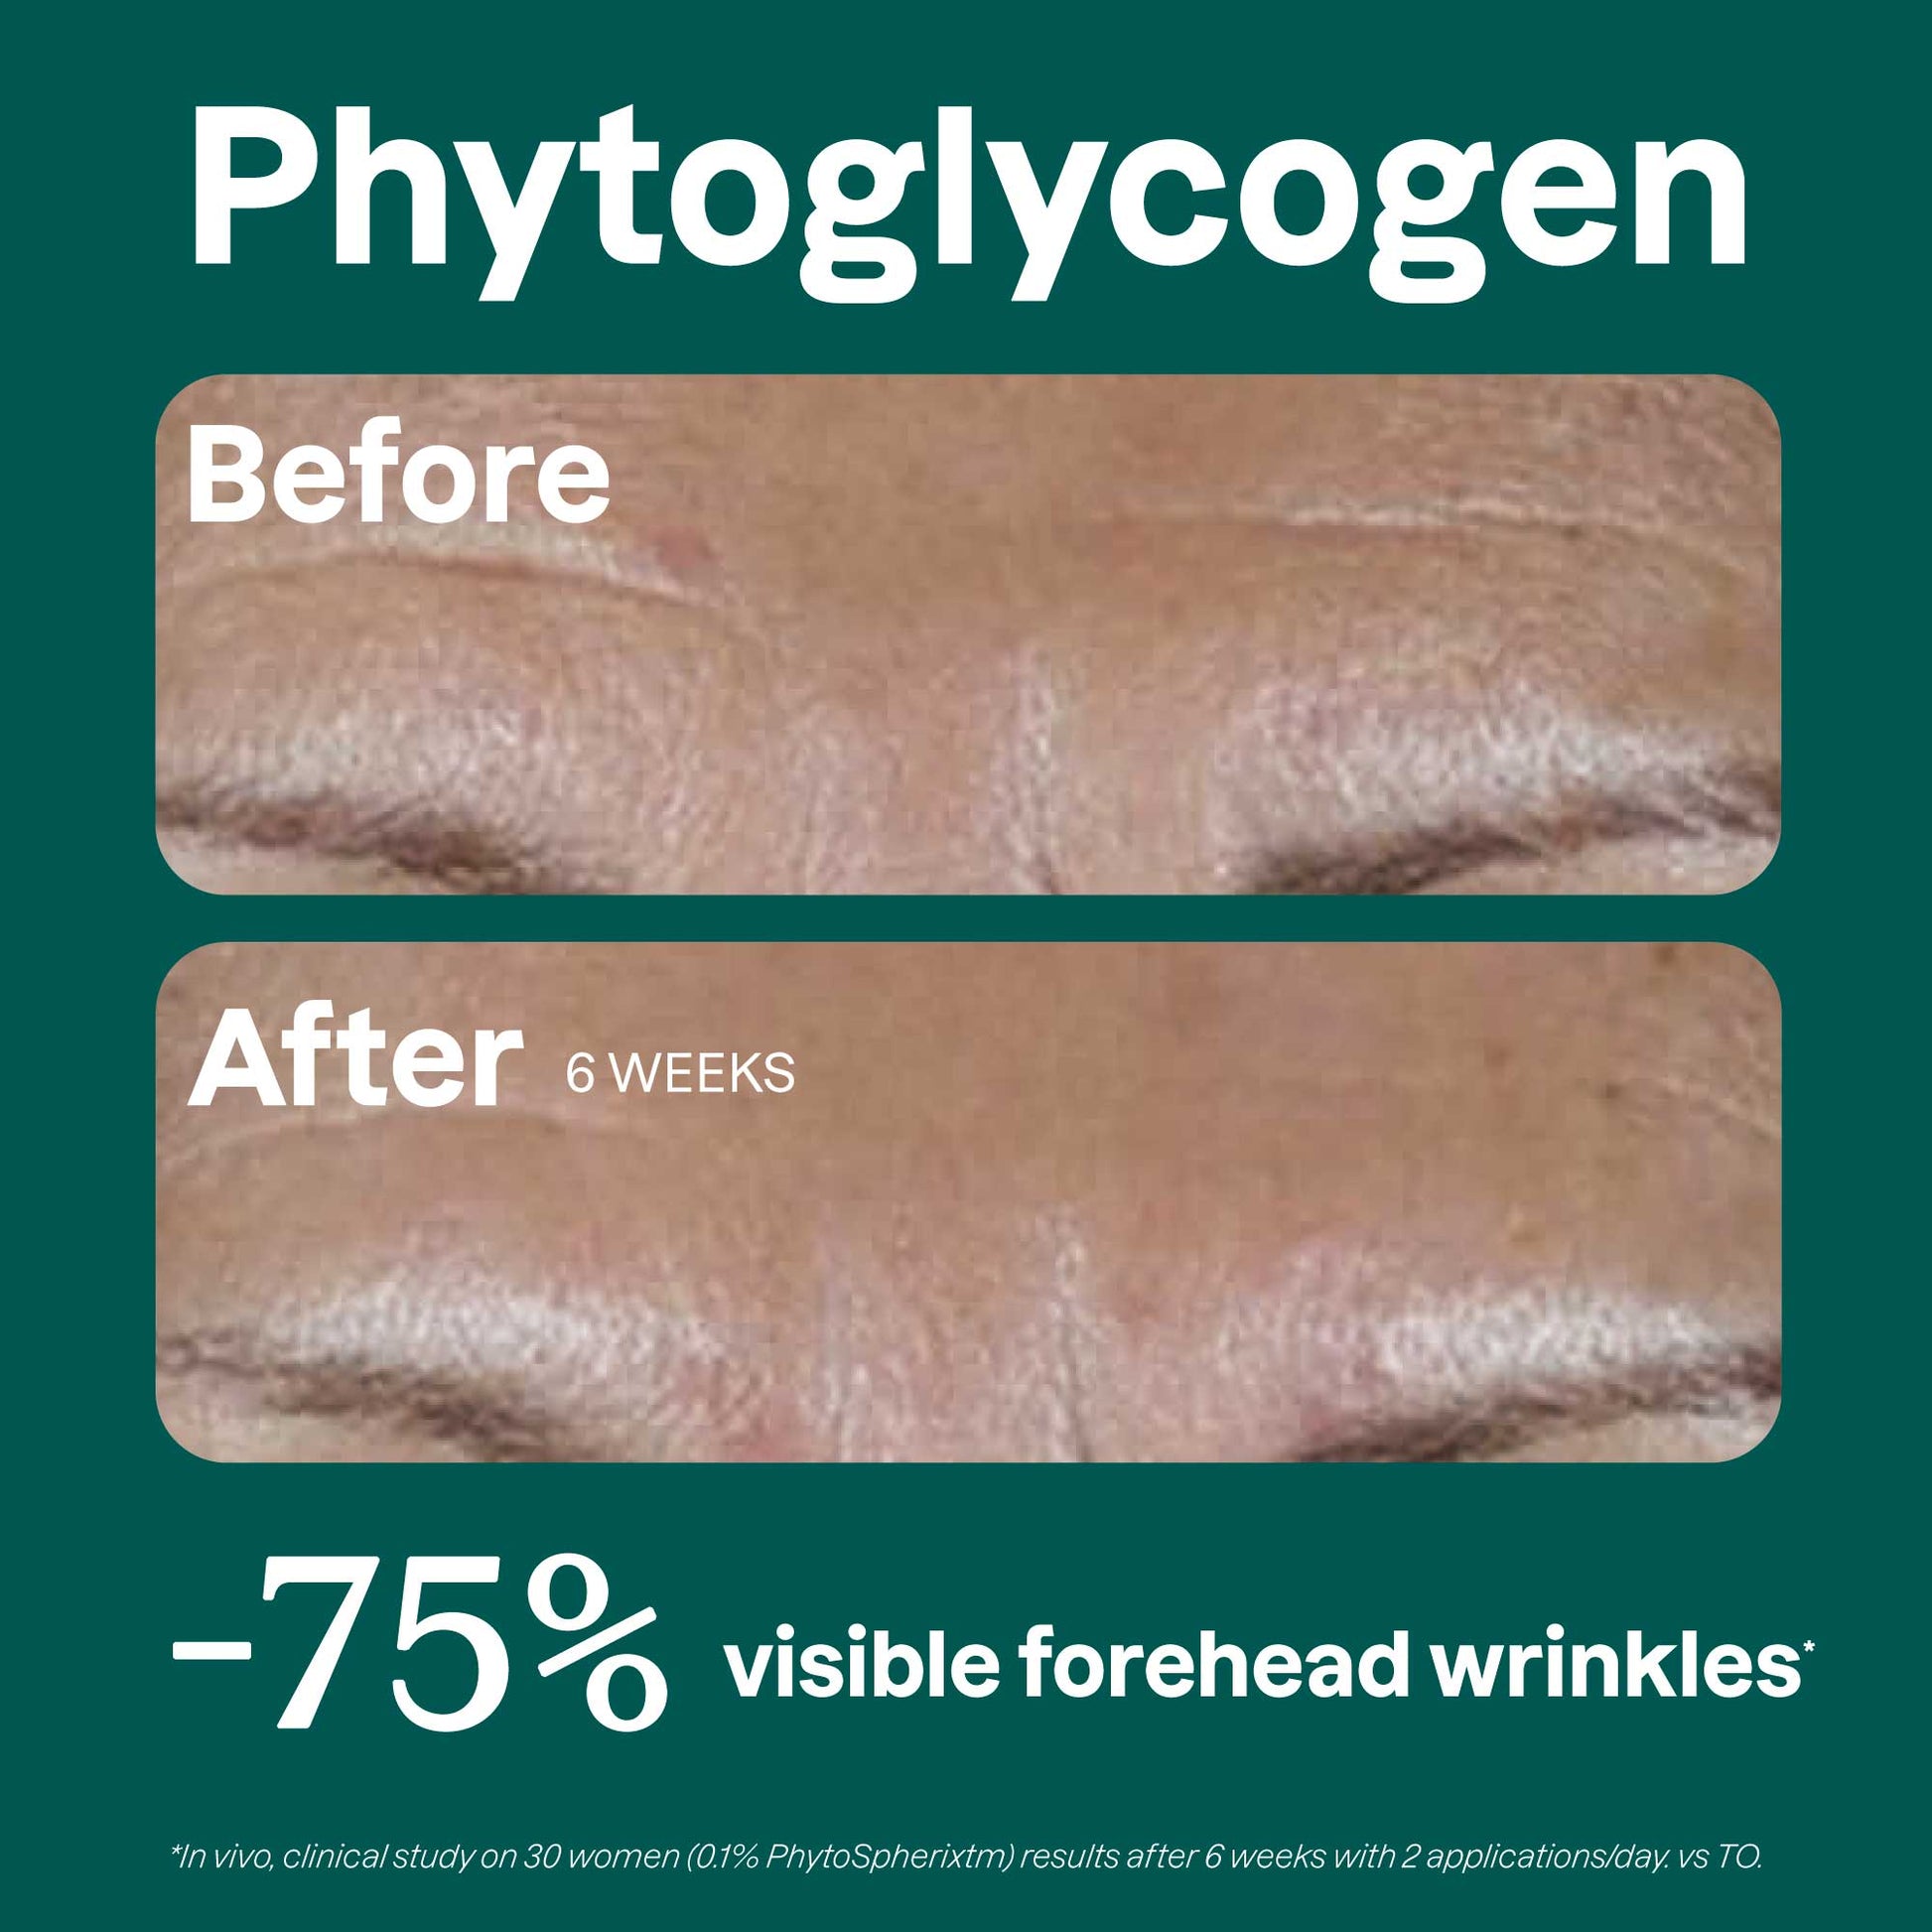 Phytoglycogen-Before-after_en?